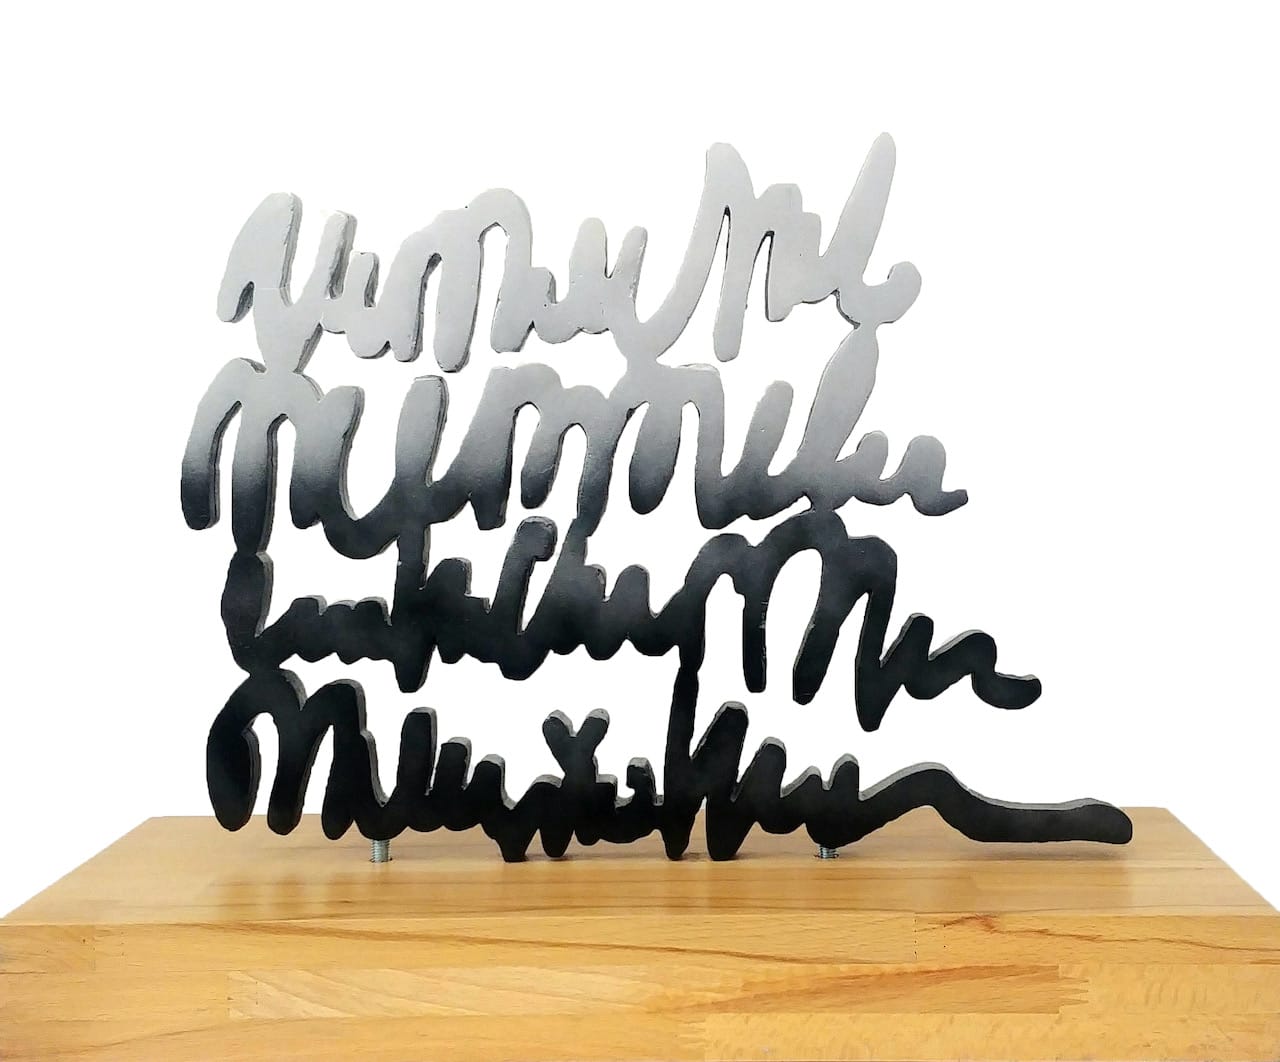 Scultura tipografica di Val Wecerka in alluminio argentato con corsivo su base di legno